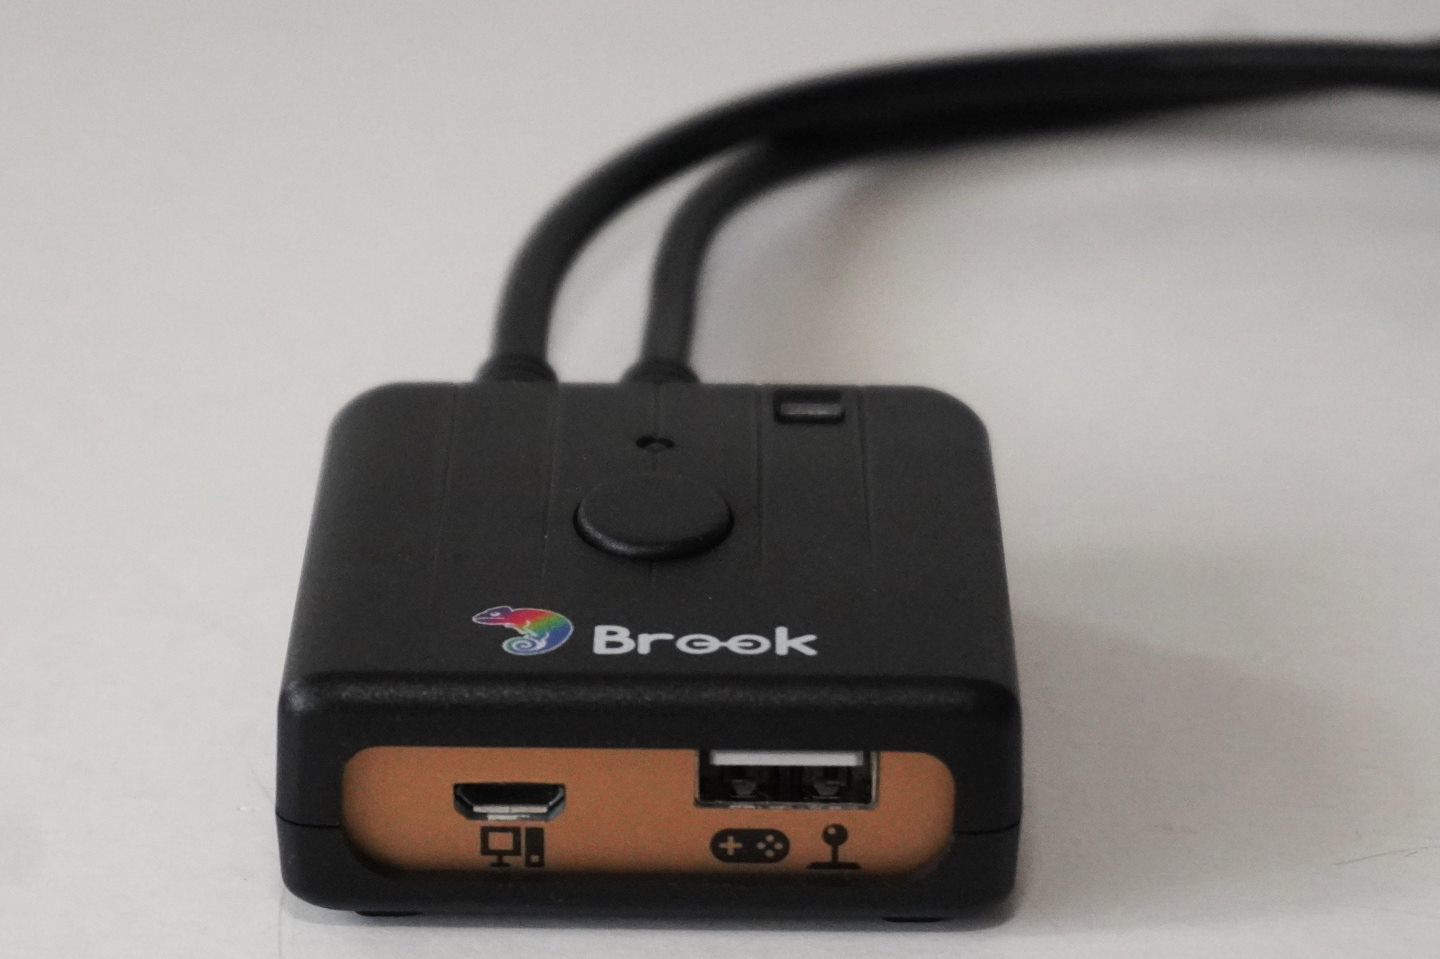 玩家可以透過藍牙無線方式或轉接器面右側的USB端連接要使用的遊戲控制器，並透過左側的Micro USB端連接到目標電腦、遊戲主機。